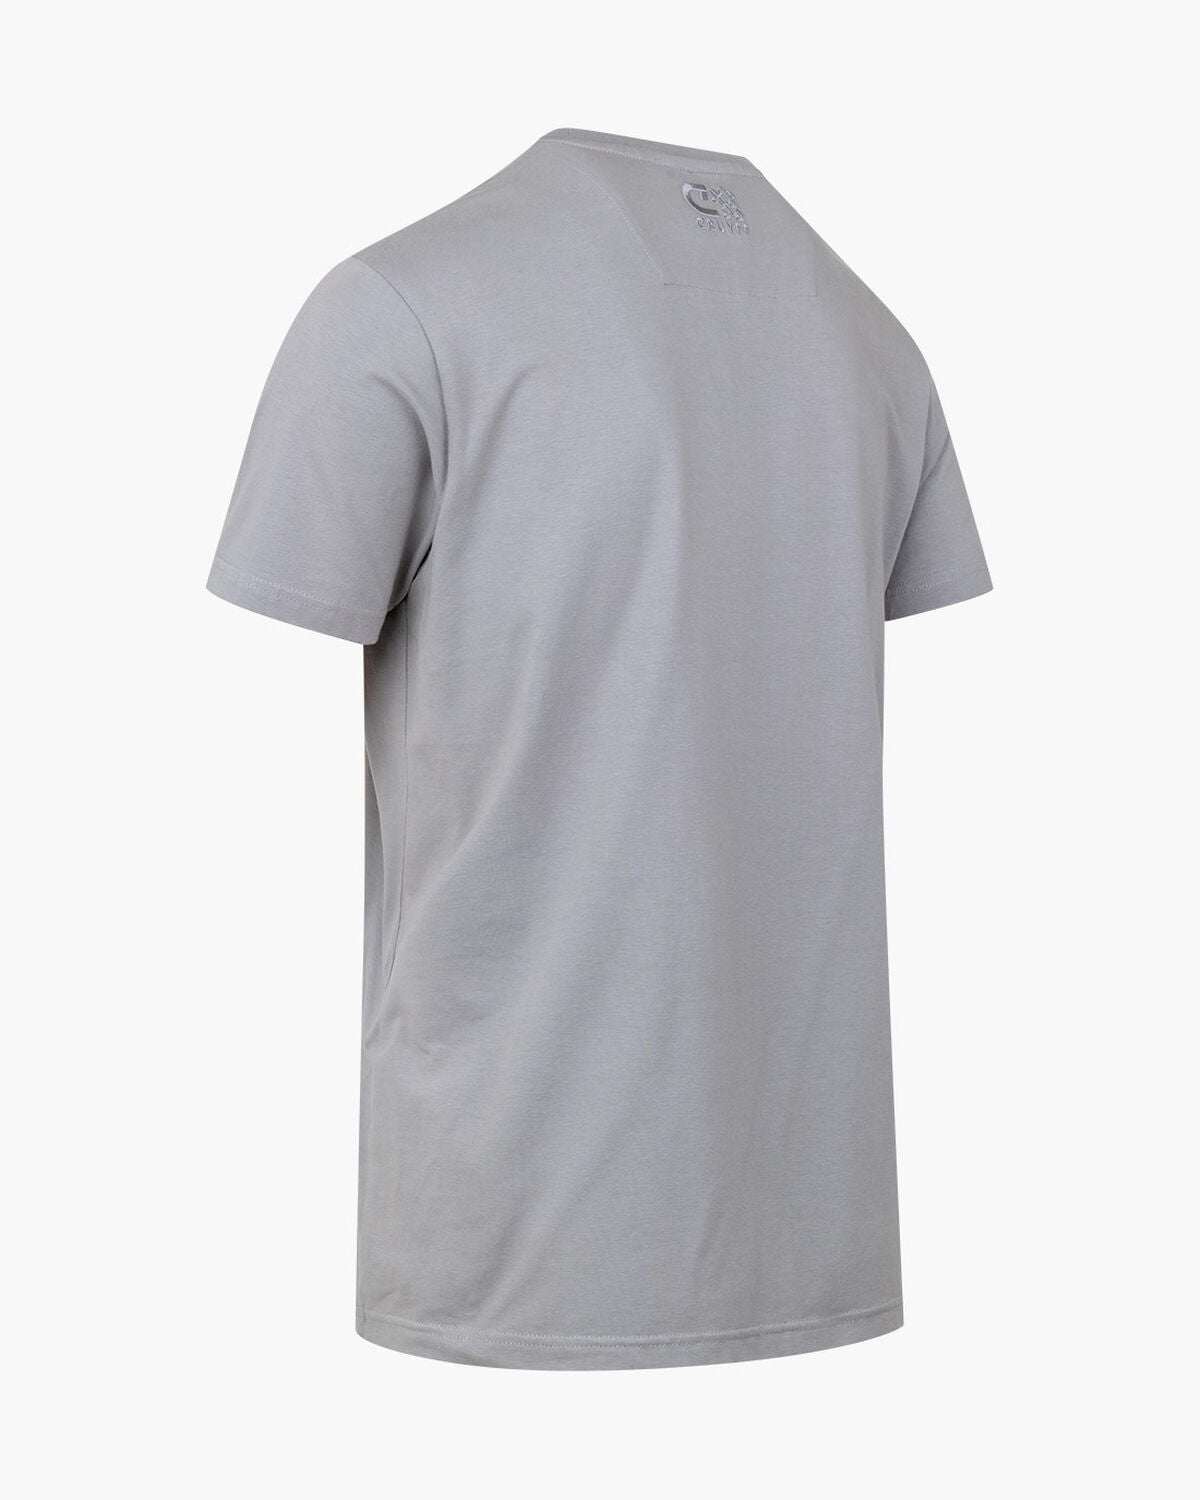 Cruyff Estru T-Shirt Grey